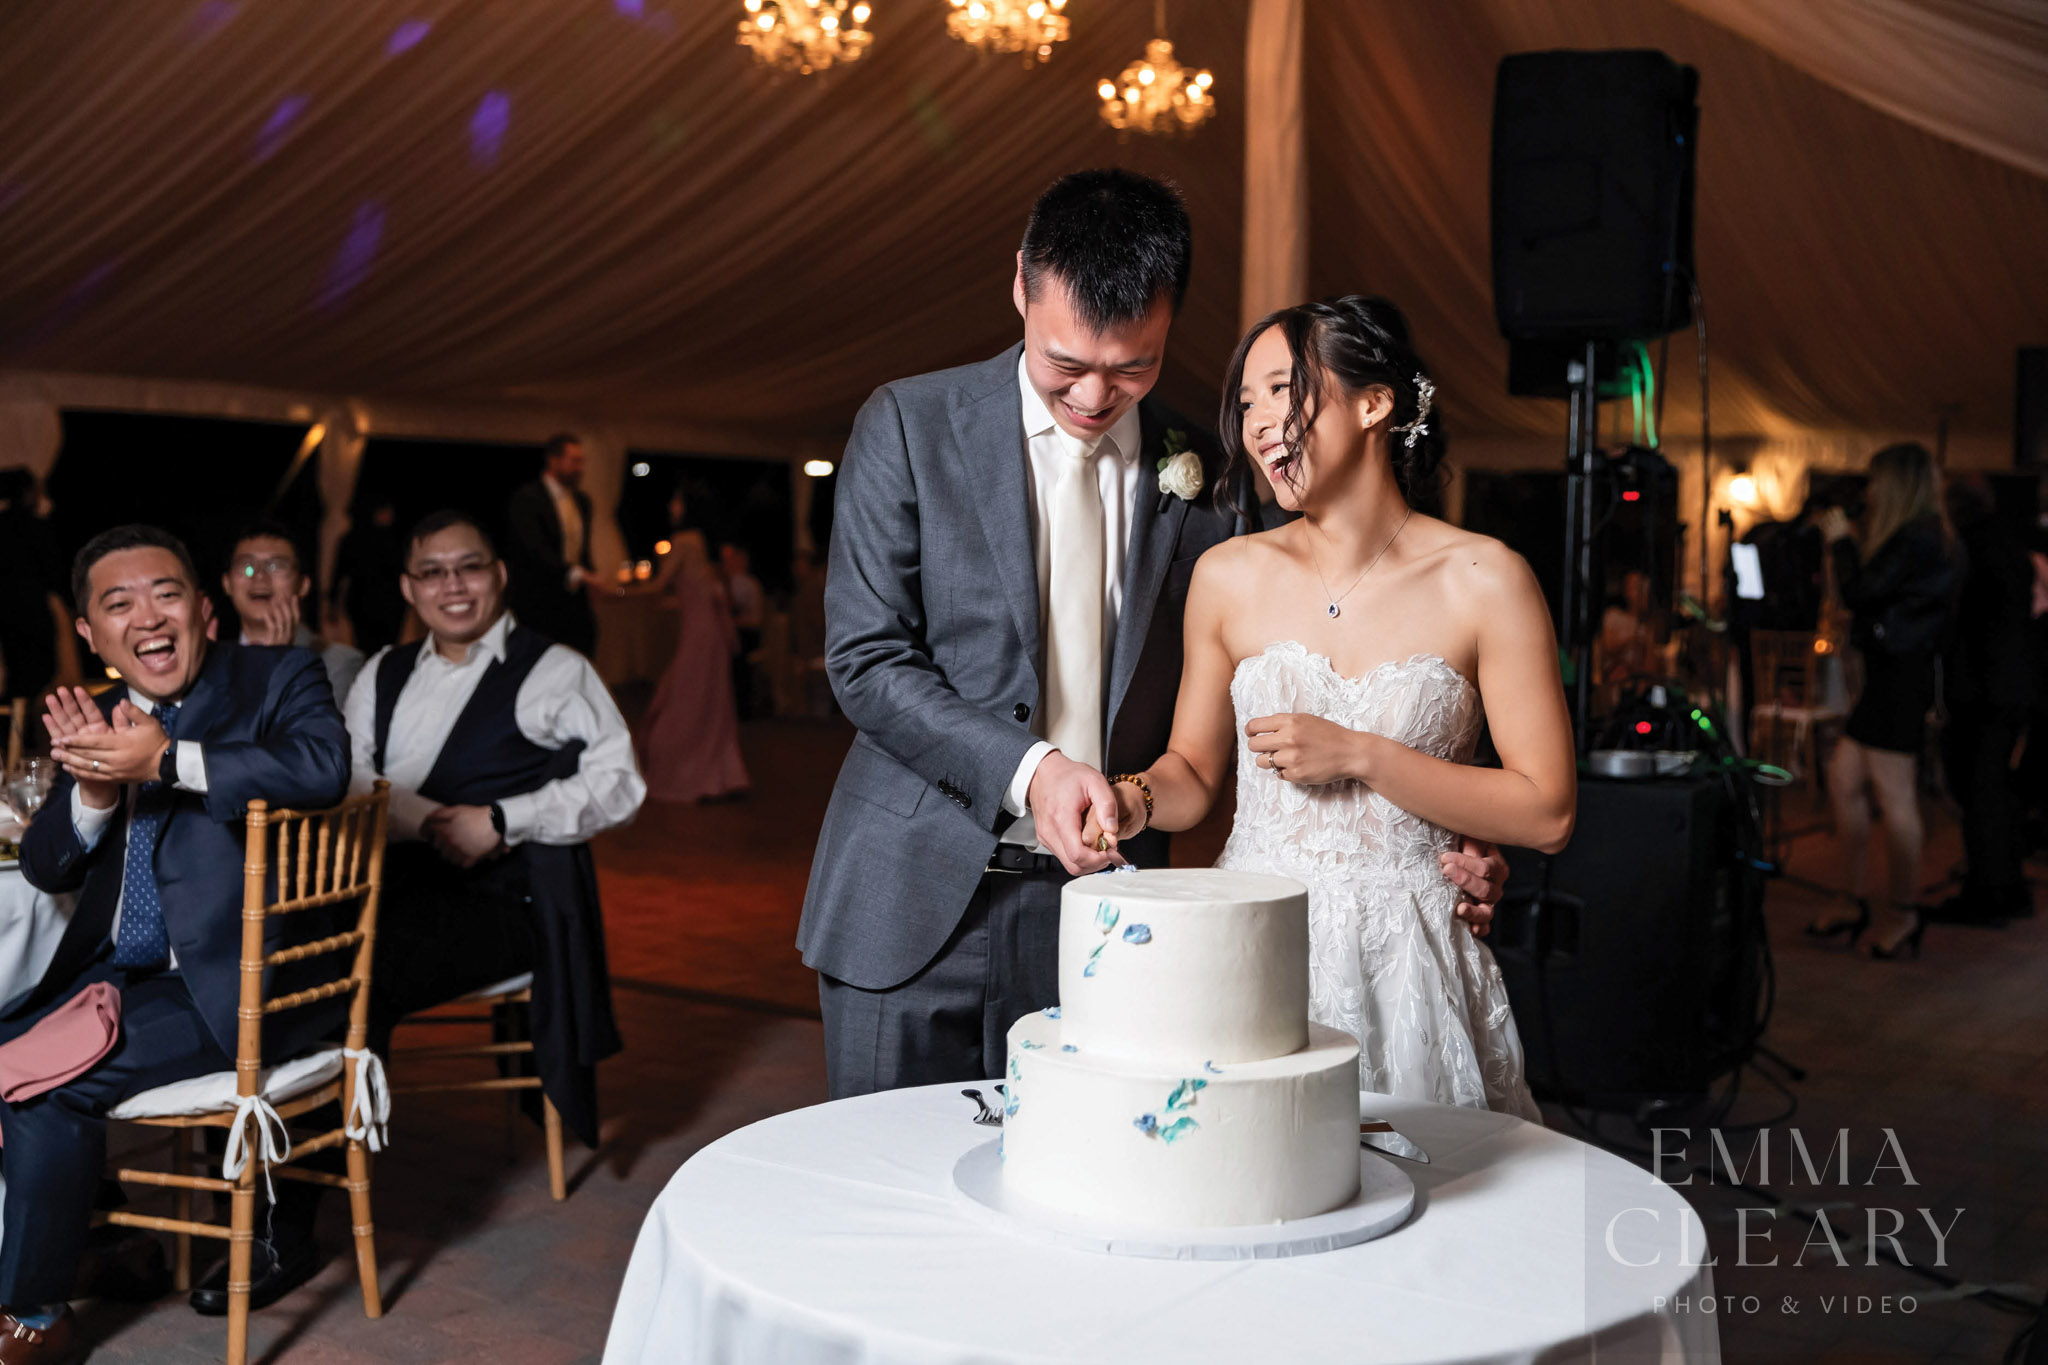 Cutting a wedding cake